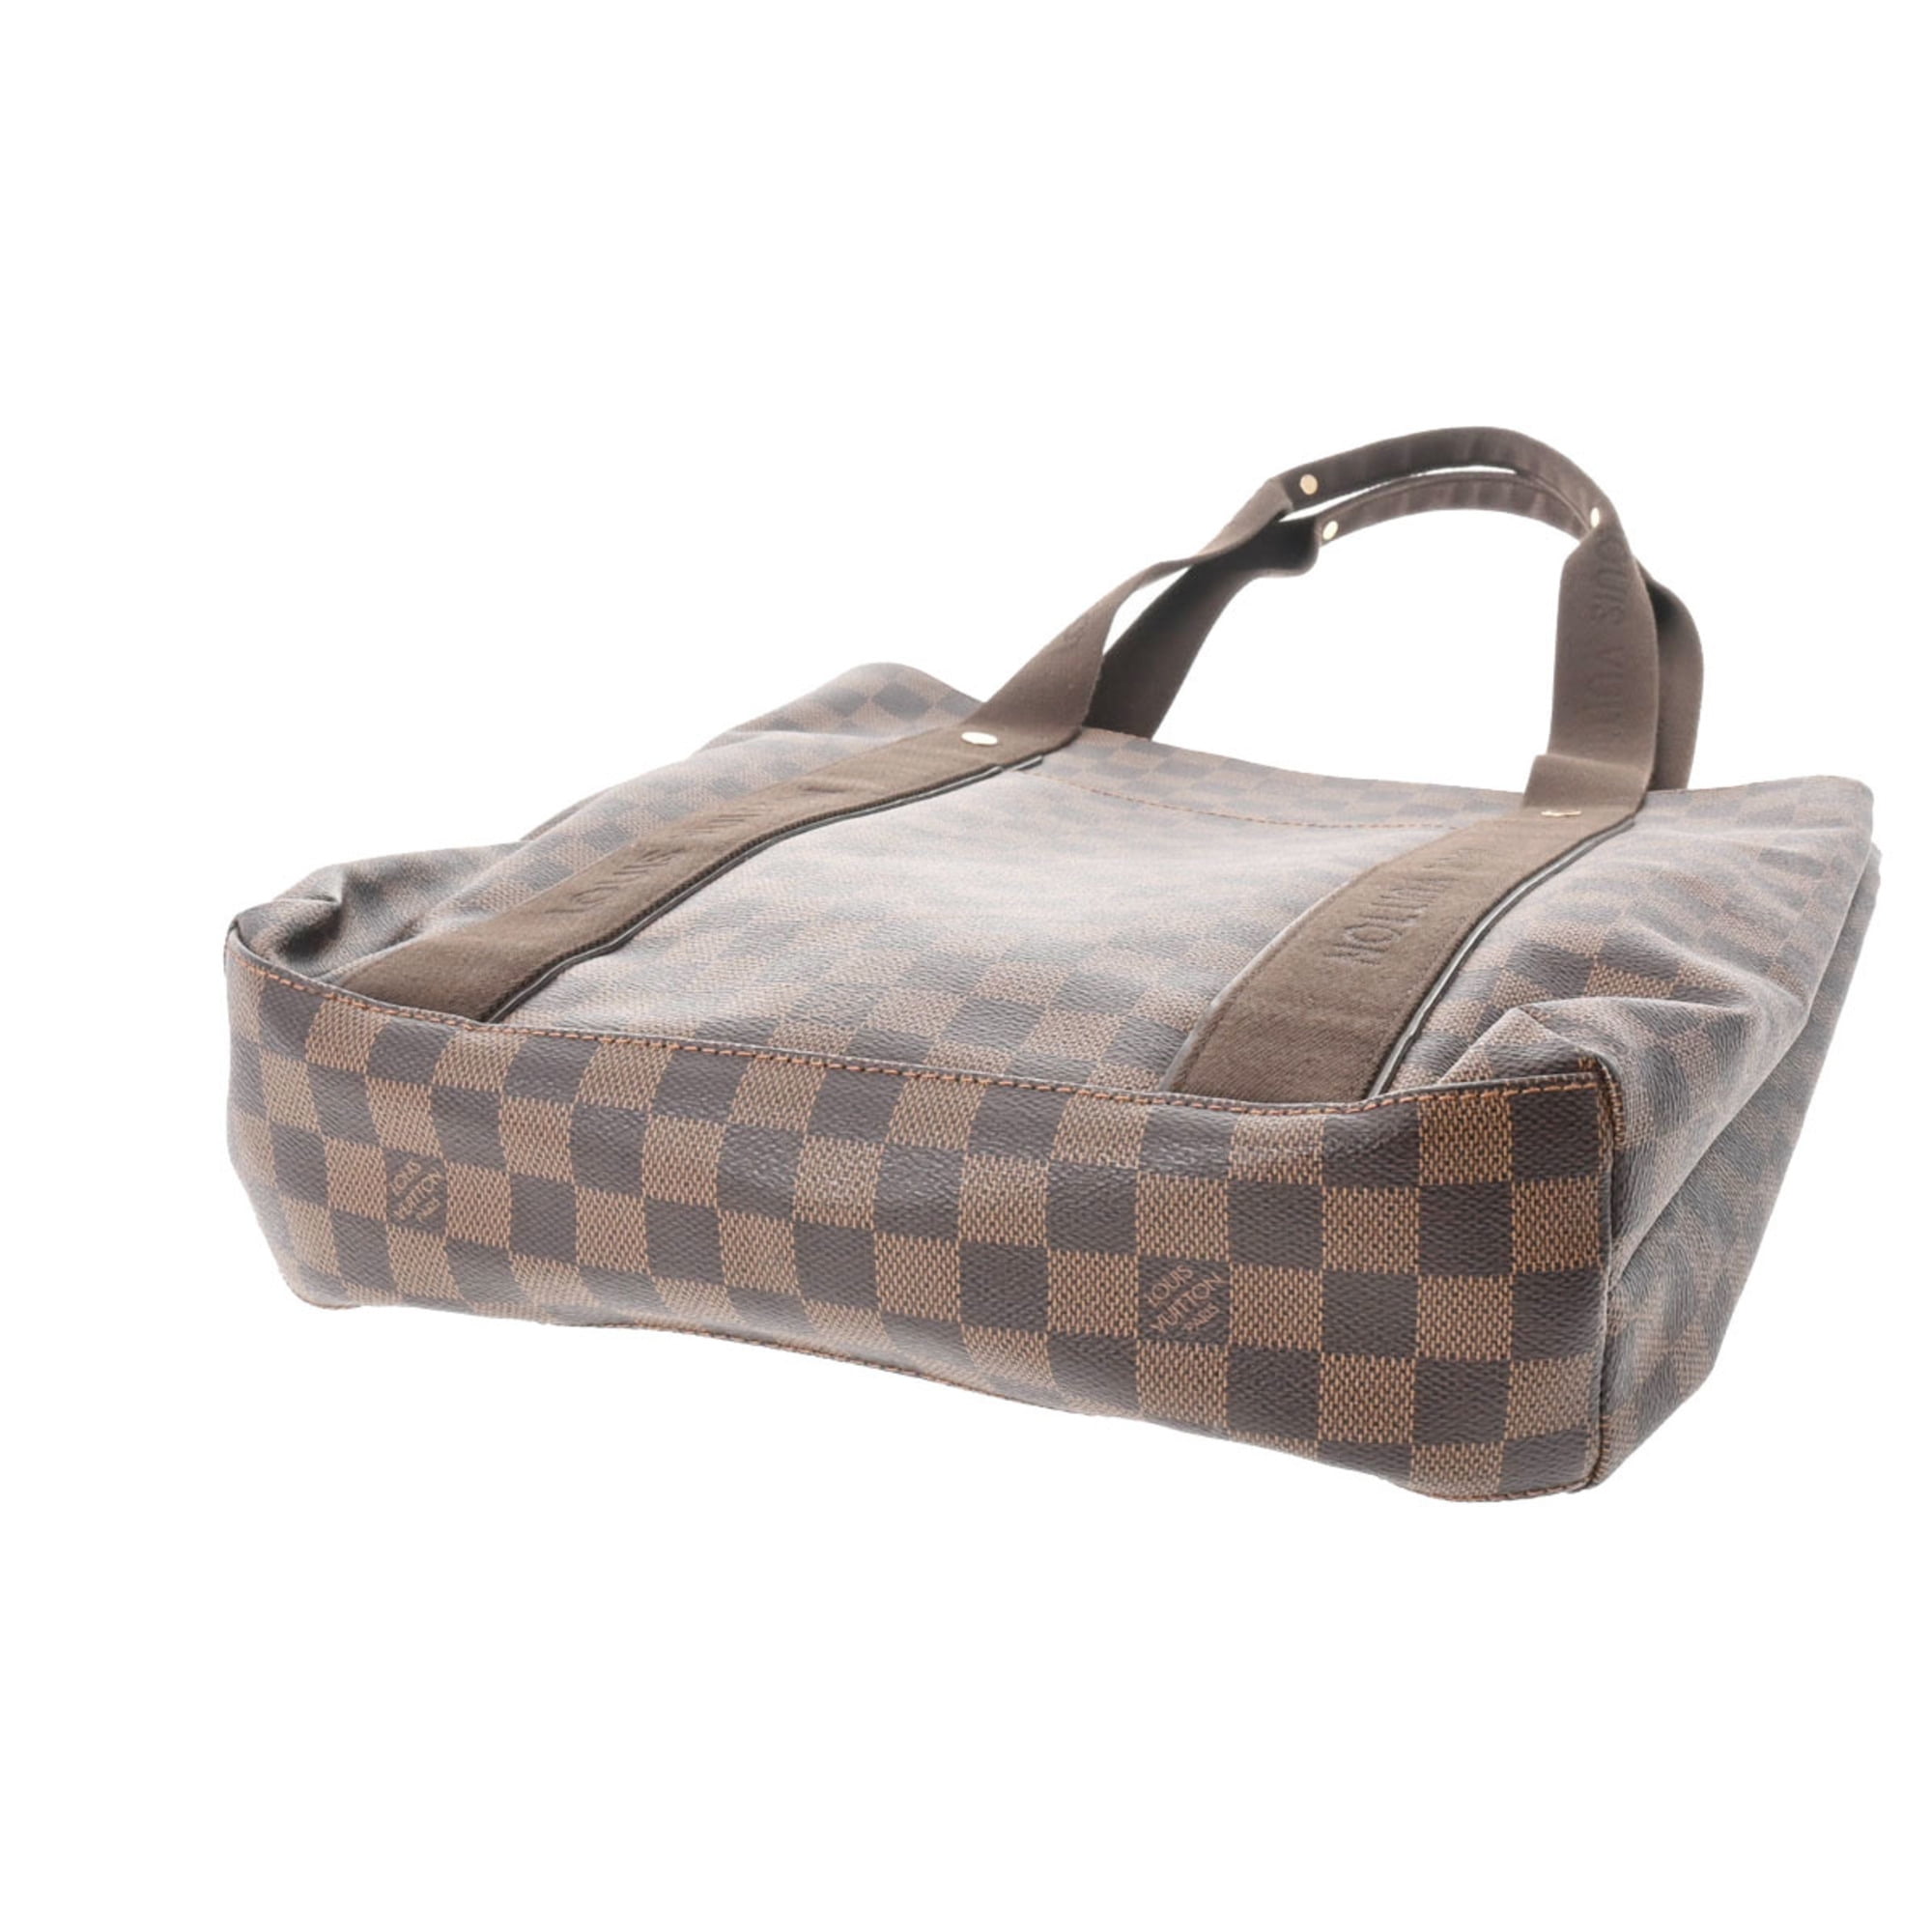 Louis Vuitton Surène Bb Brown Canvas Shopper Bag (Pre-Owned)